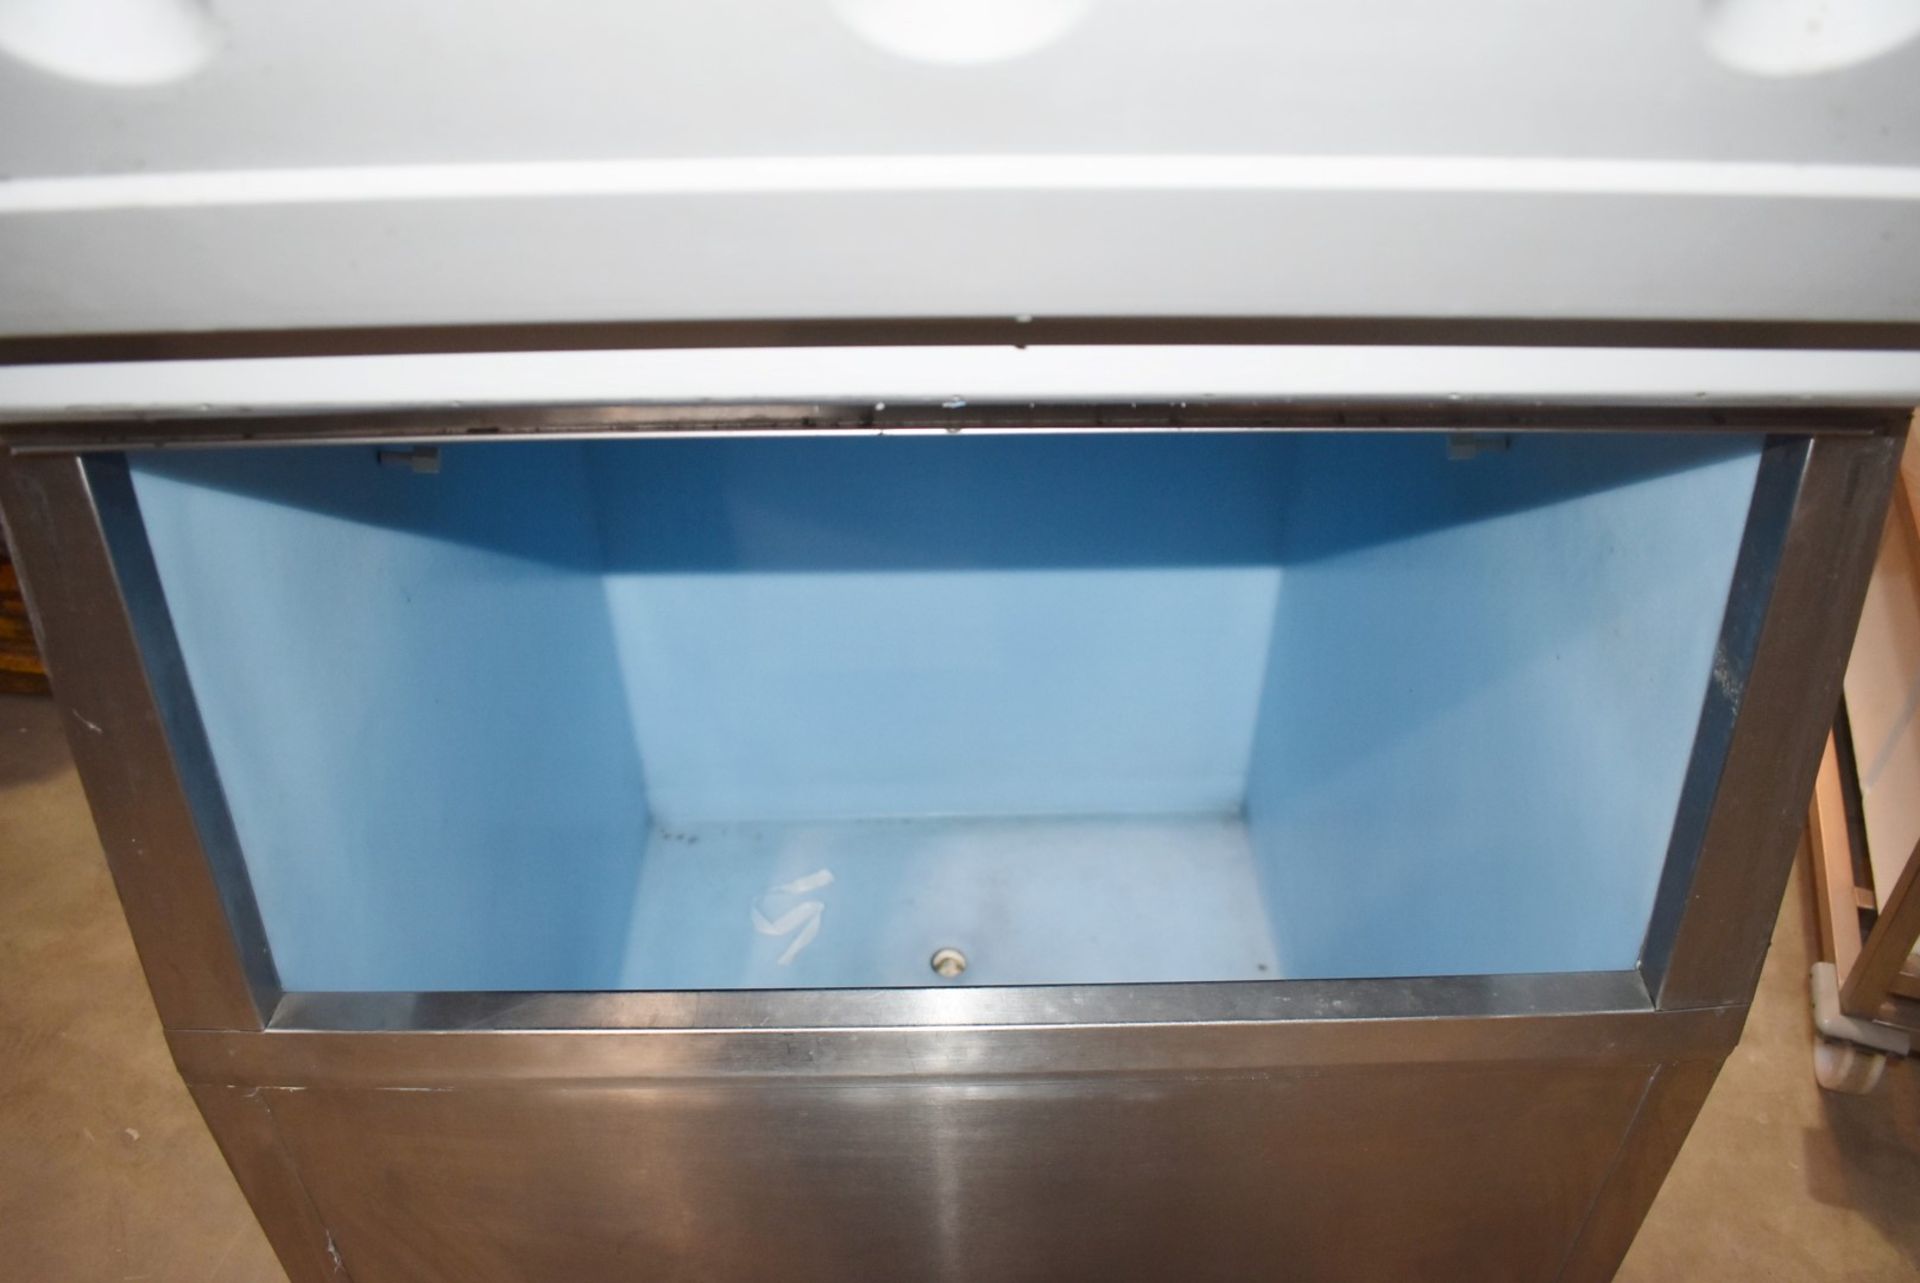 1 x Hoshizaki FM-480AFE Ice Machine - Produces Upto 480kg of Ice Flakes Per Days - Includes Large - Image 5 of 12